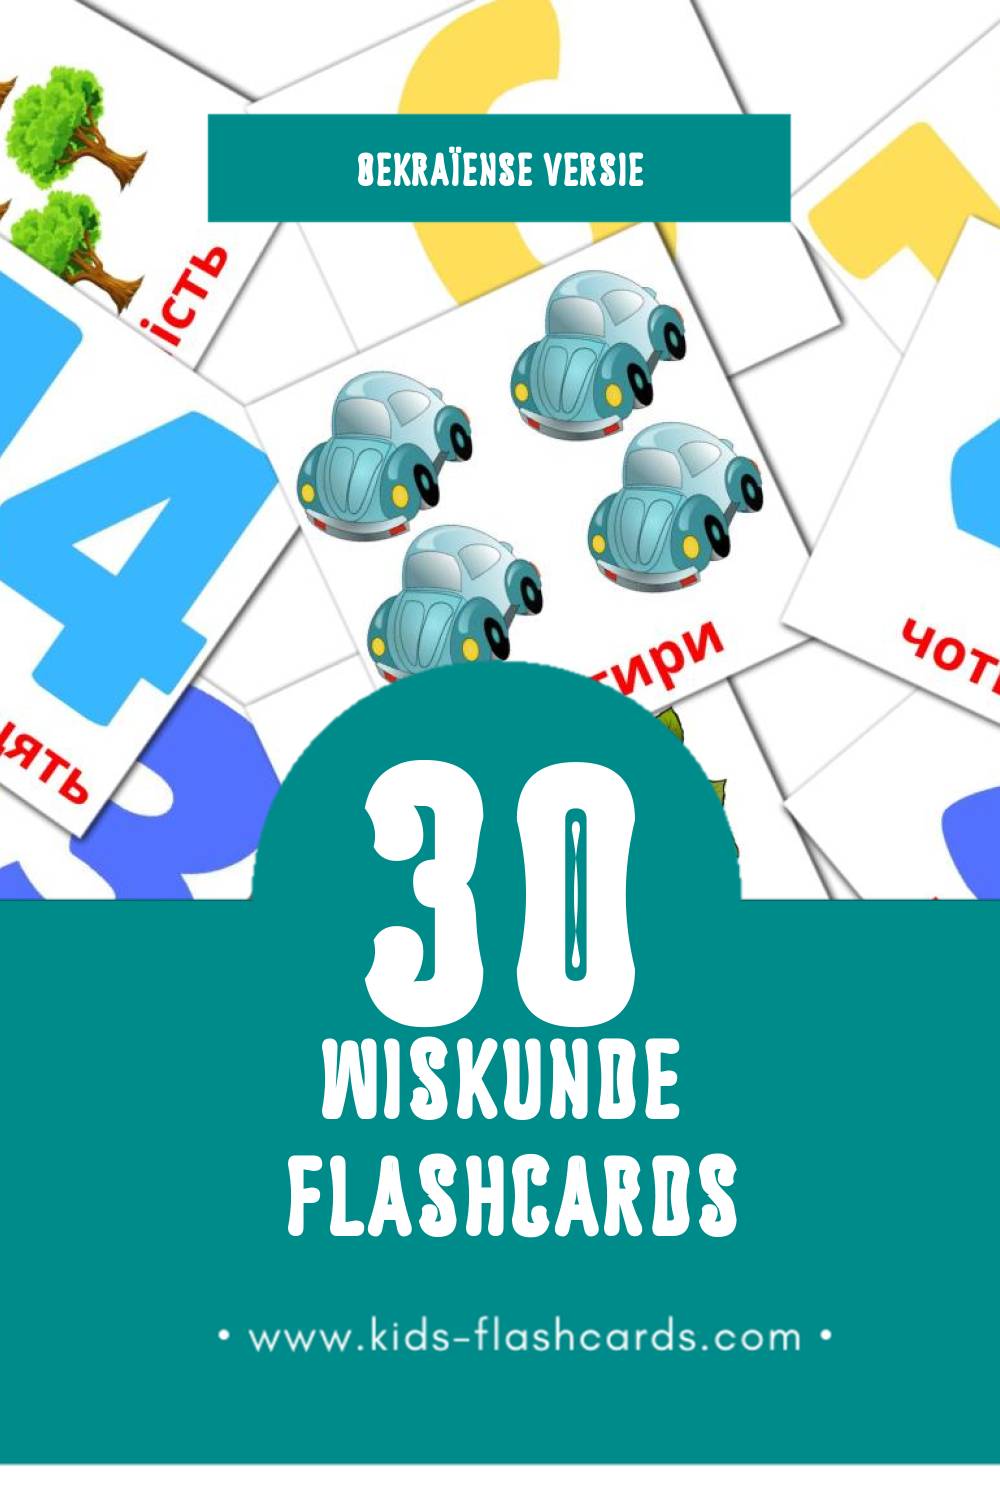 Visuele Математика Flashcards voor Kleuters (30 kaarten in het Oekraïens)